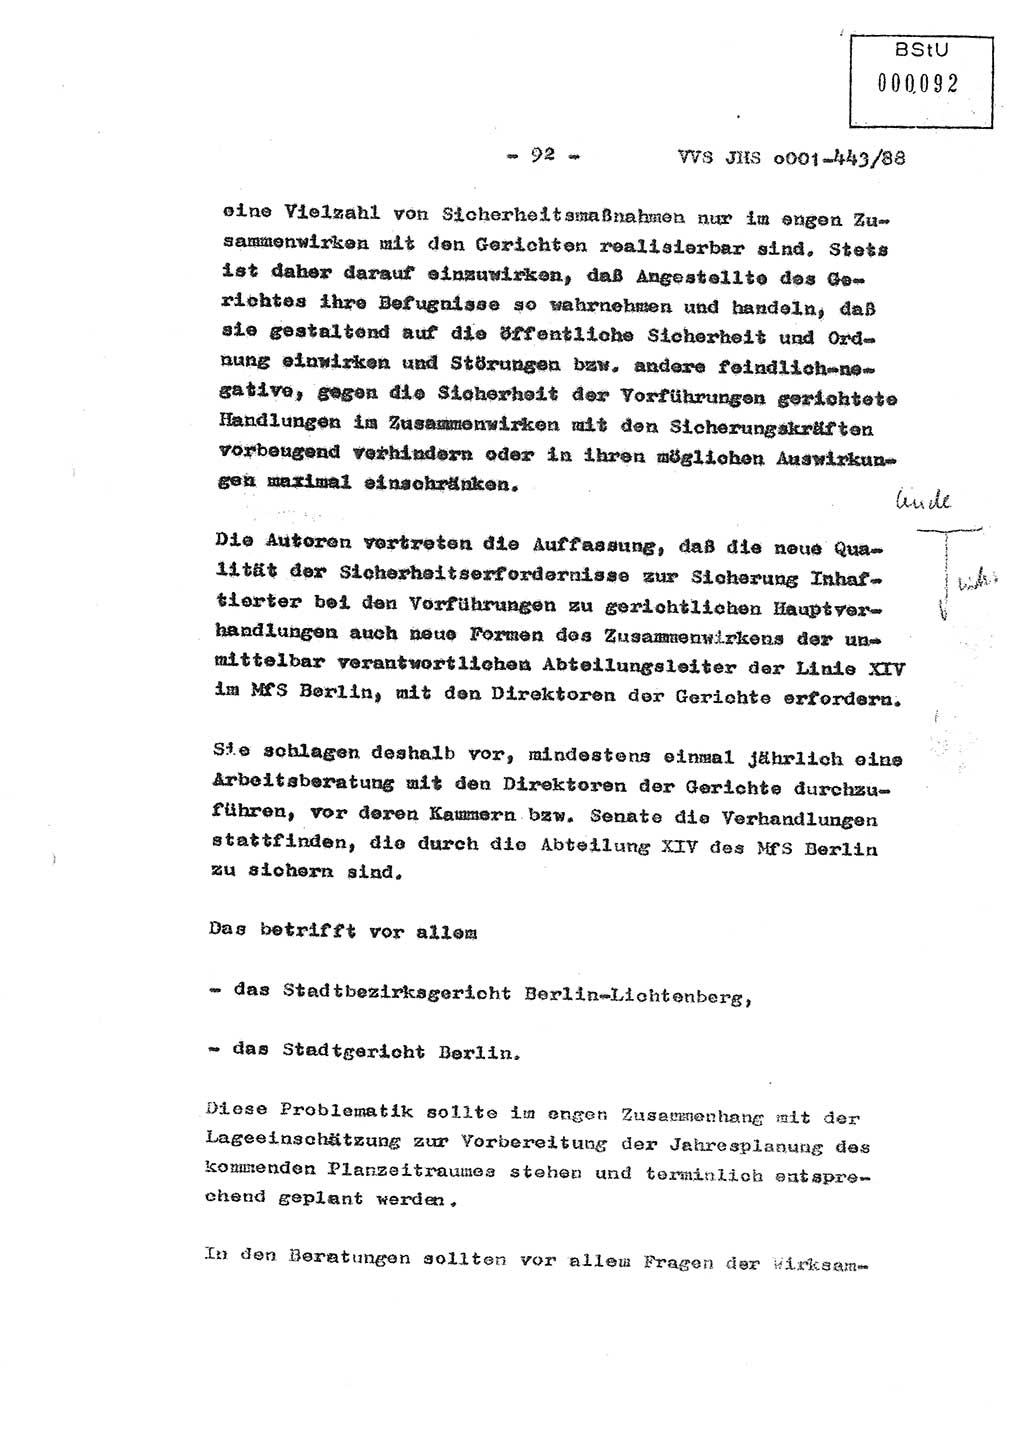 Diplomarbeit Hauptmann Michael Rast (Abt. ⅩⅣ), Major Bernd Rahaus (Abt. ⅩⅣ), Ministerium für Staatssicherheit (MfS) [Deutsche Demokratische Republik (DDR)], Juristische Hochschule (JHS), Vertrauliche Verschlußsache (VVS) o001-443/88, Potsdam 1988, Seite 92 (Dipl.-Arb. MfS DDR JHS VVS o001-443/88 1988, S. 92)